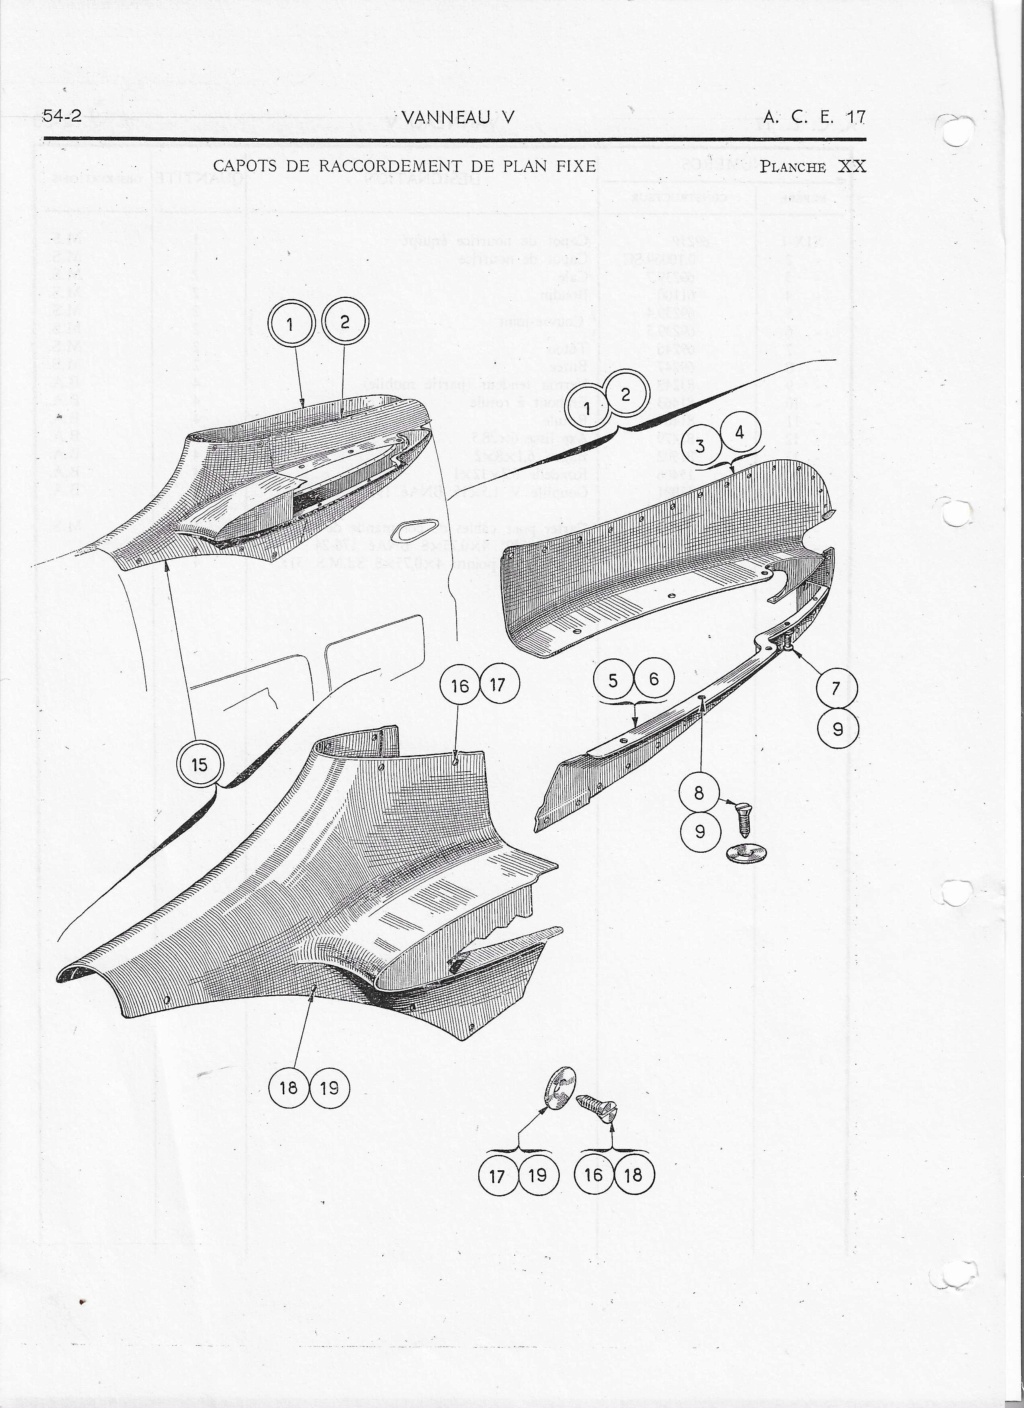 Morane-Saulnier MS.475 Vanneau au 1/16 scratch intégral en bois massif sculpté : fuselage arrière et empennage - Page 6 Image_22